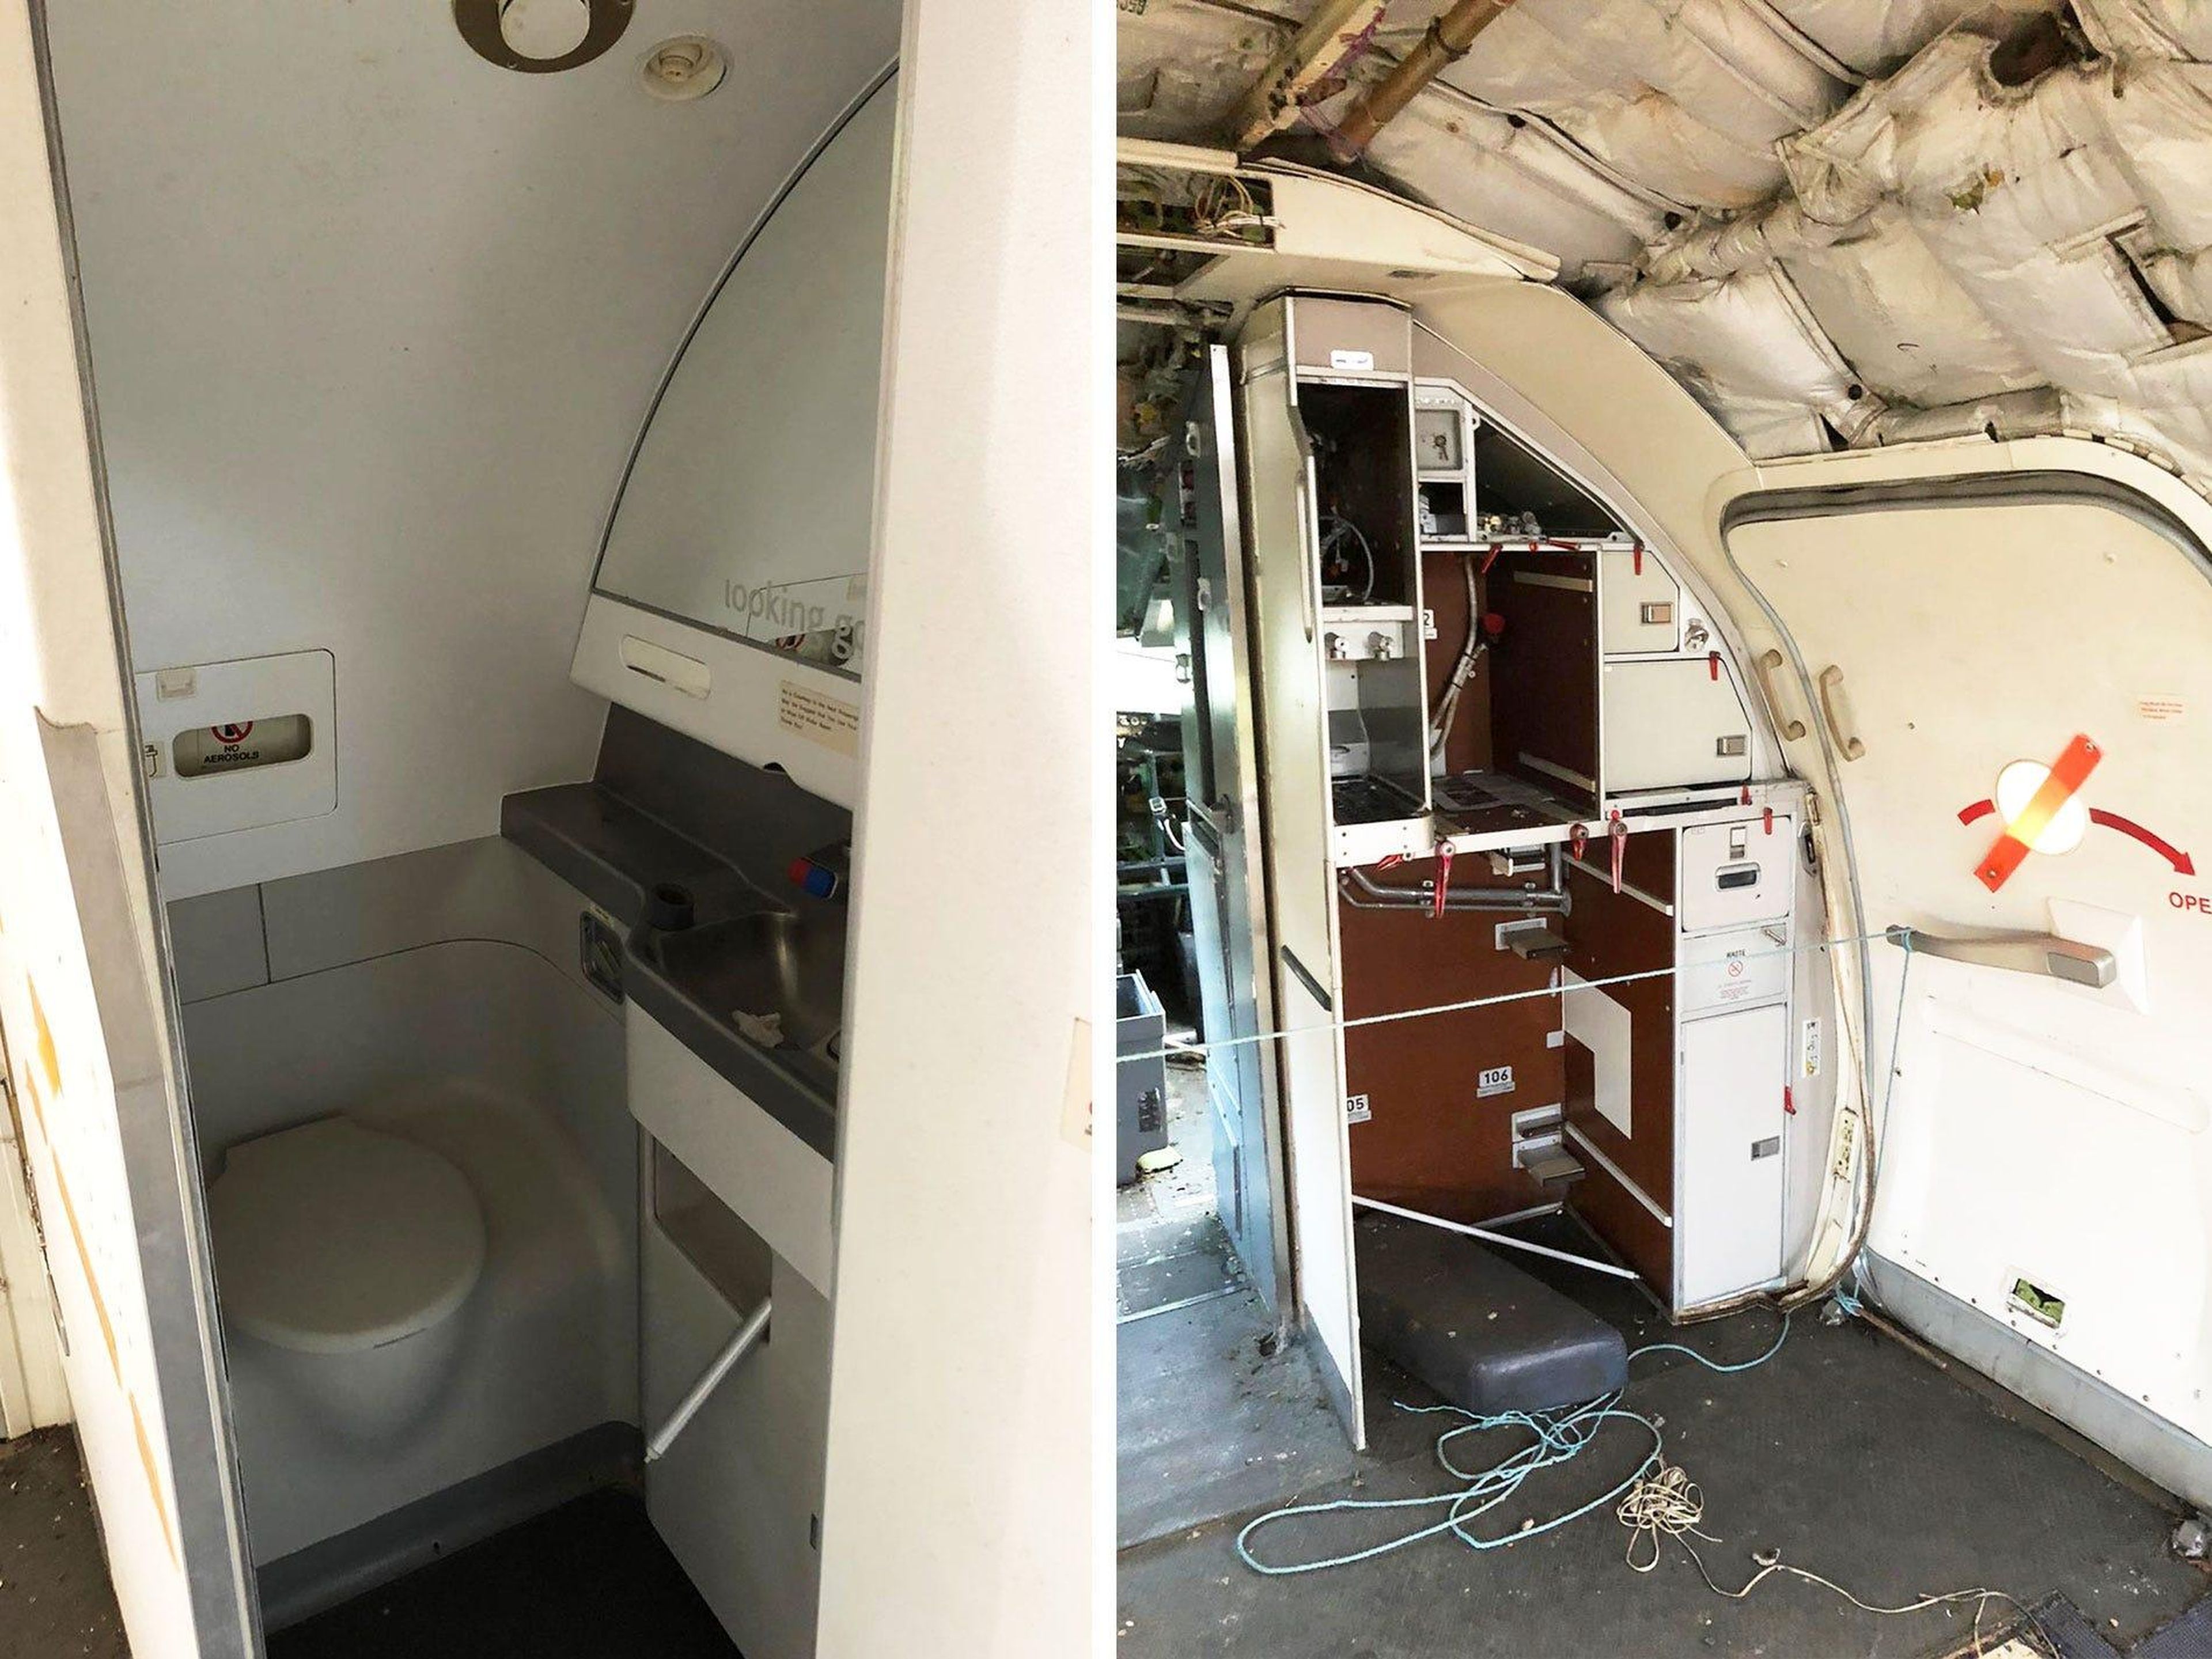 Izquierda: Interior del baño del Boeing 737. Derecha: Cocina del Boeing 737.